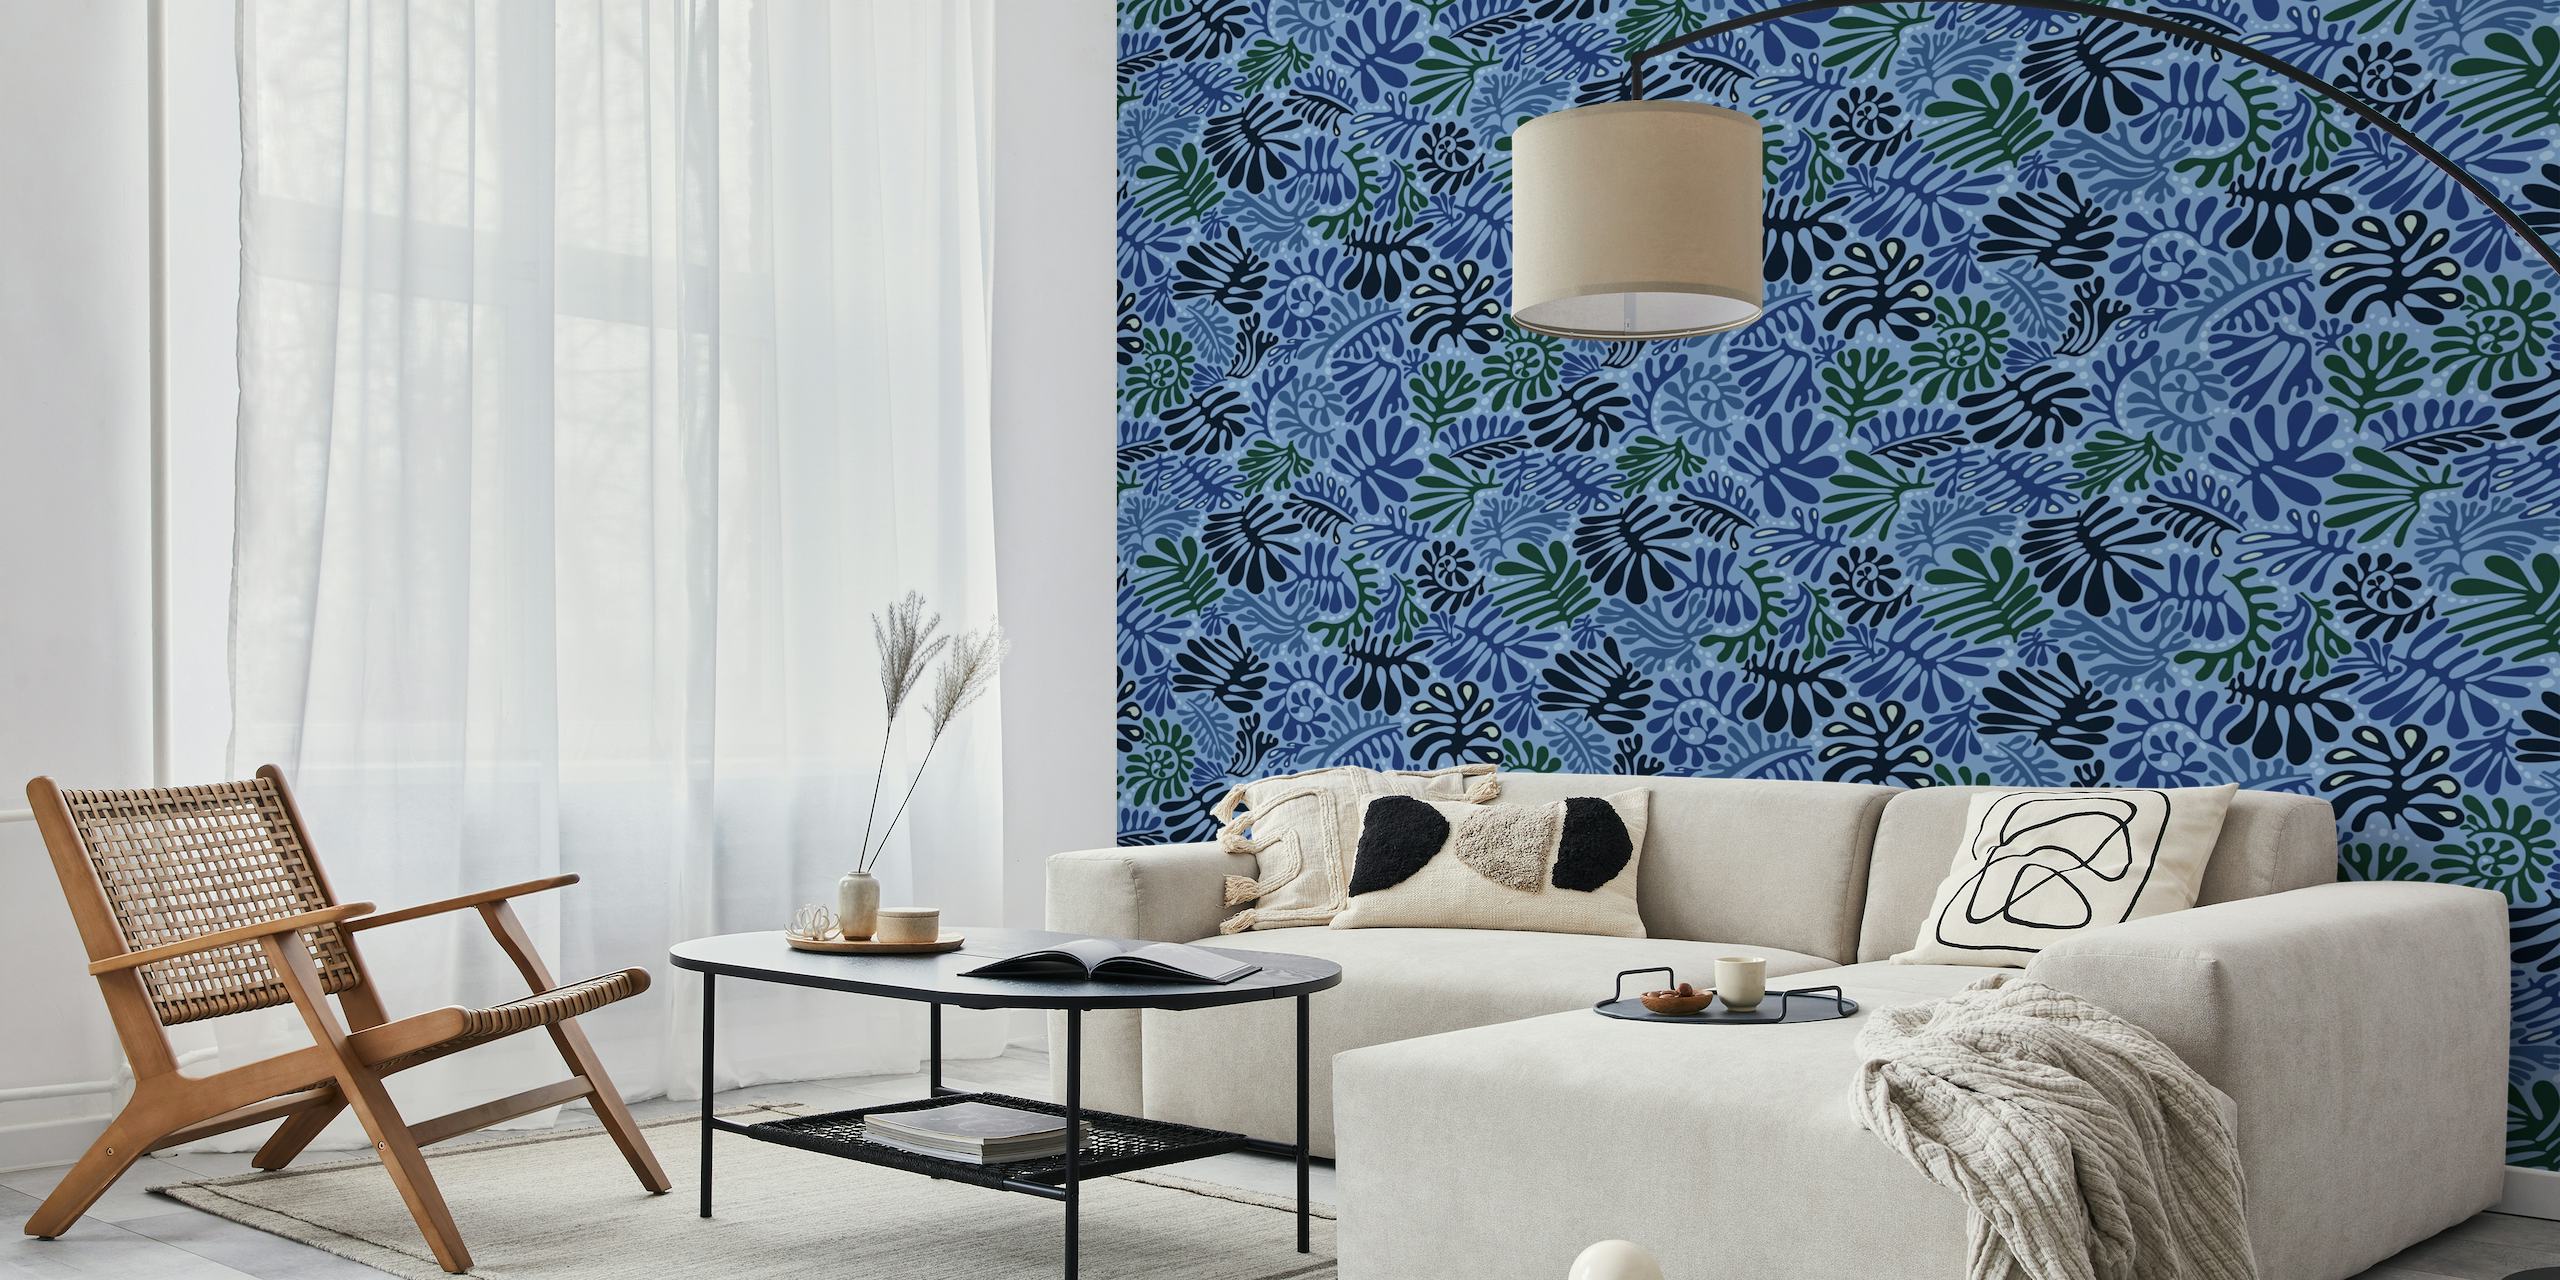 Elegante mural de pared con estampado de hojas azules de happywall.com con varios tonos de azul y diseños recortados de plantas.